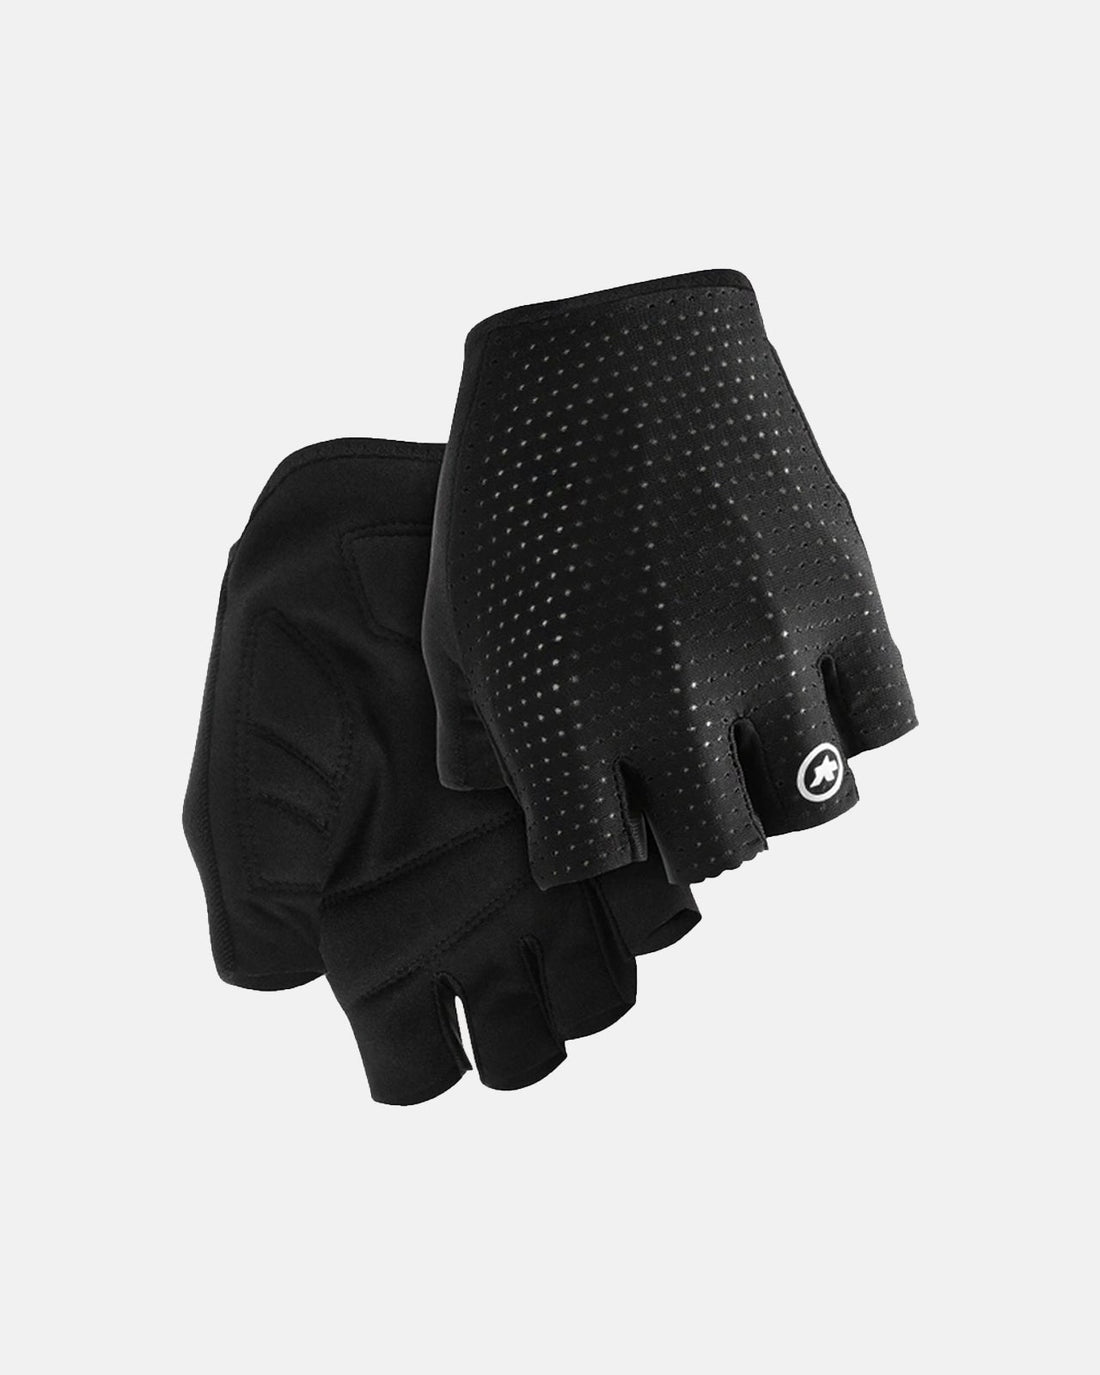 GT Gloves C2 - Assos